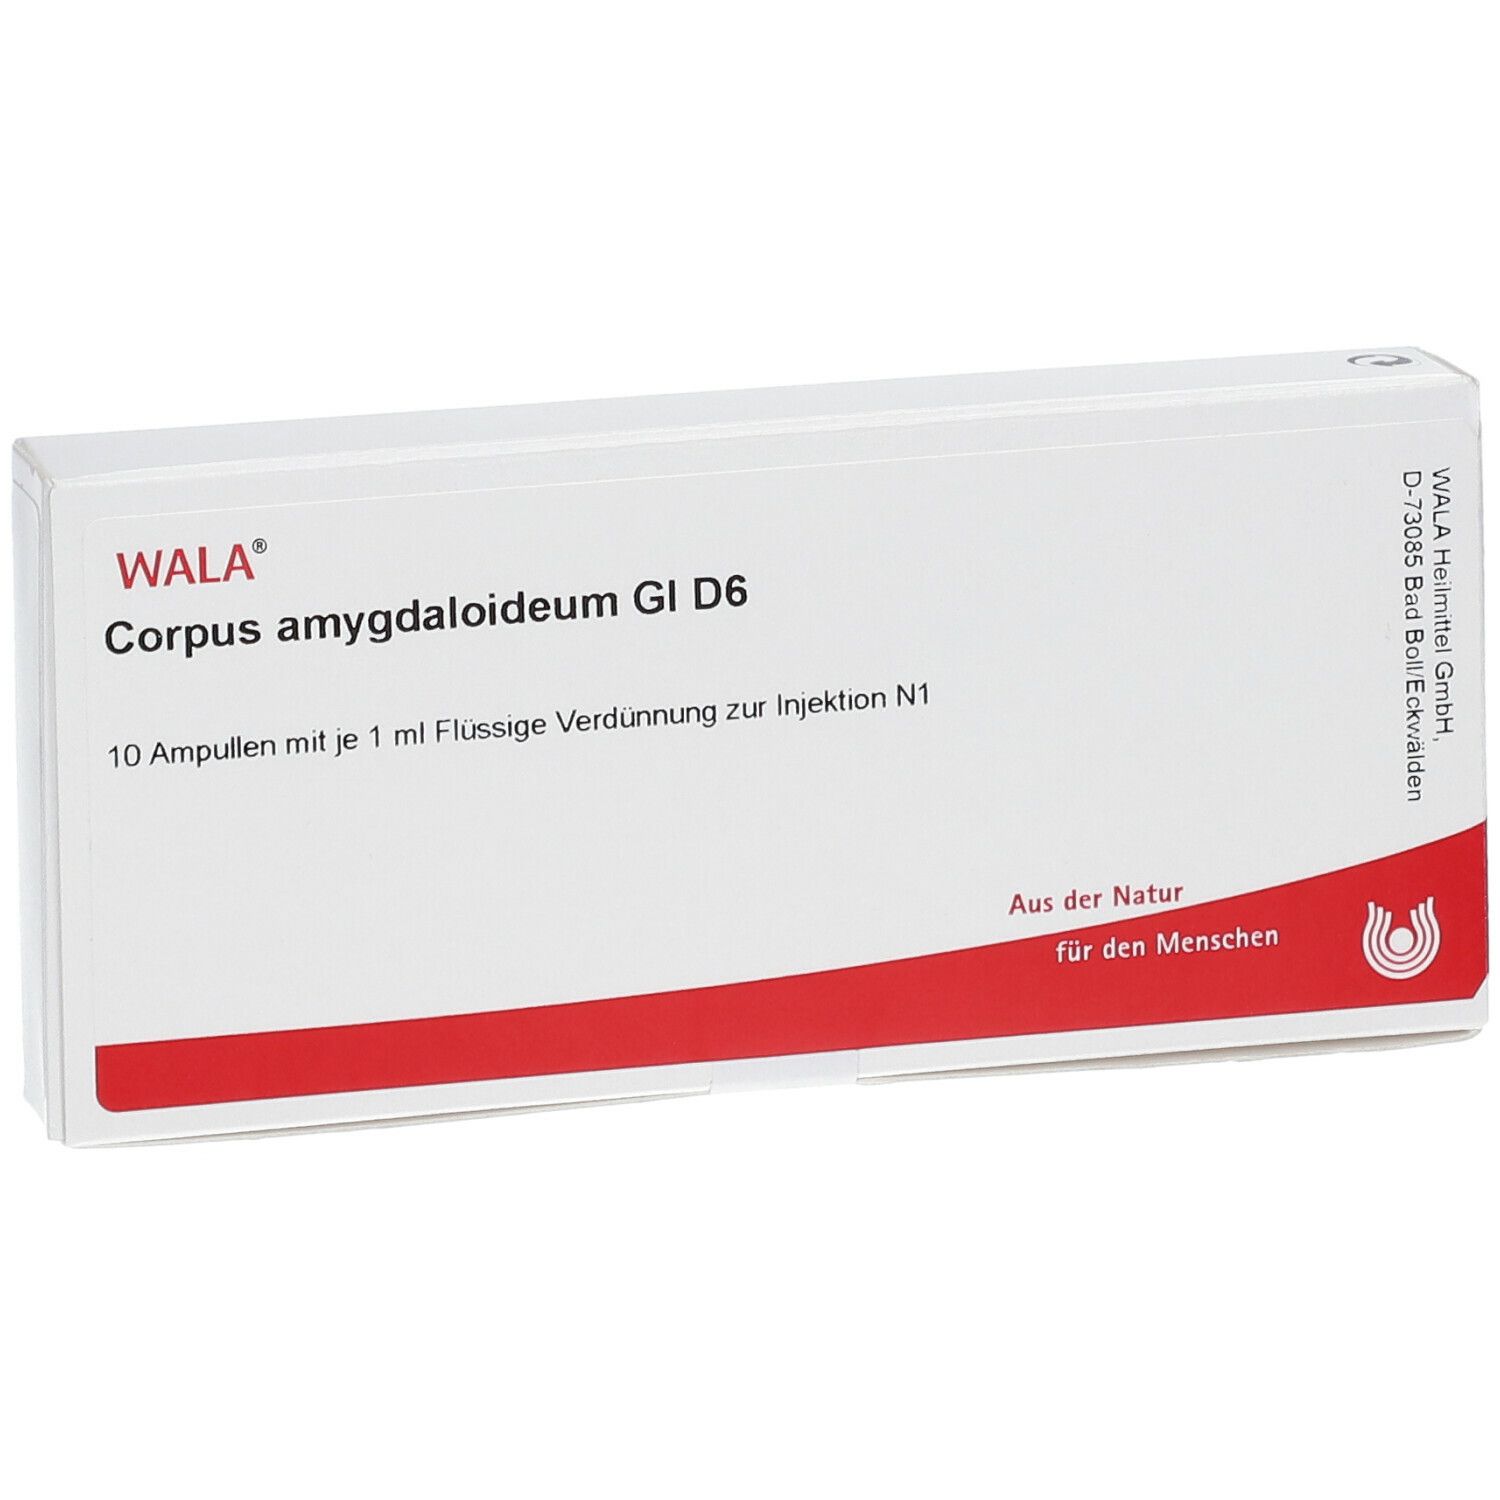 WALA® Corpus amygdaloideum Gl D 6